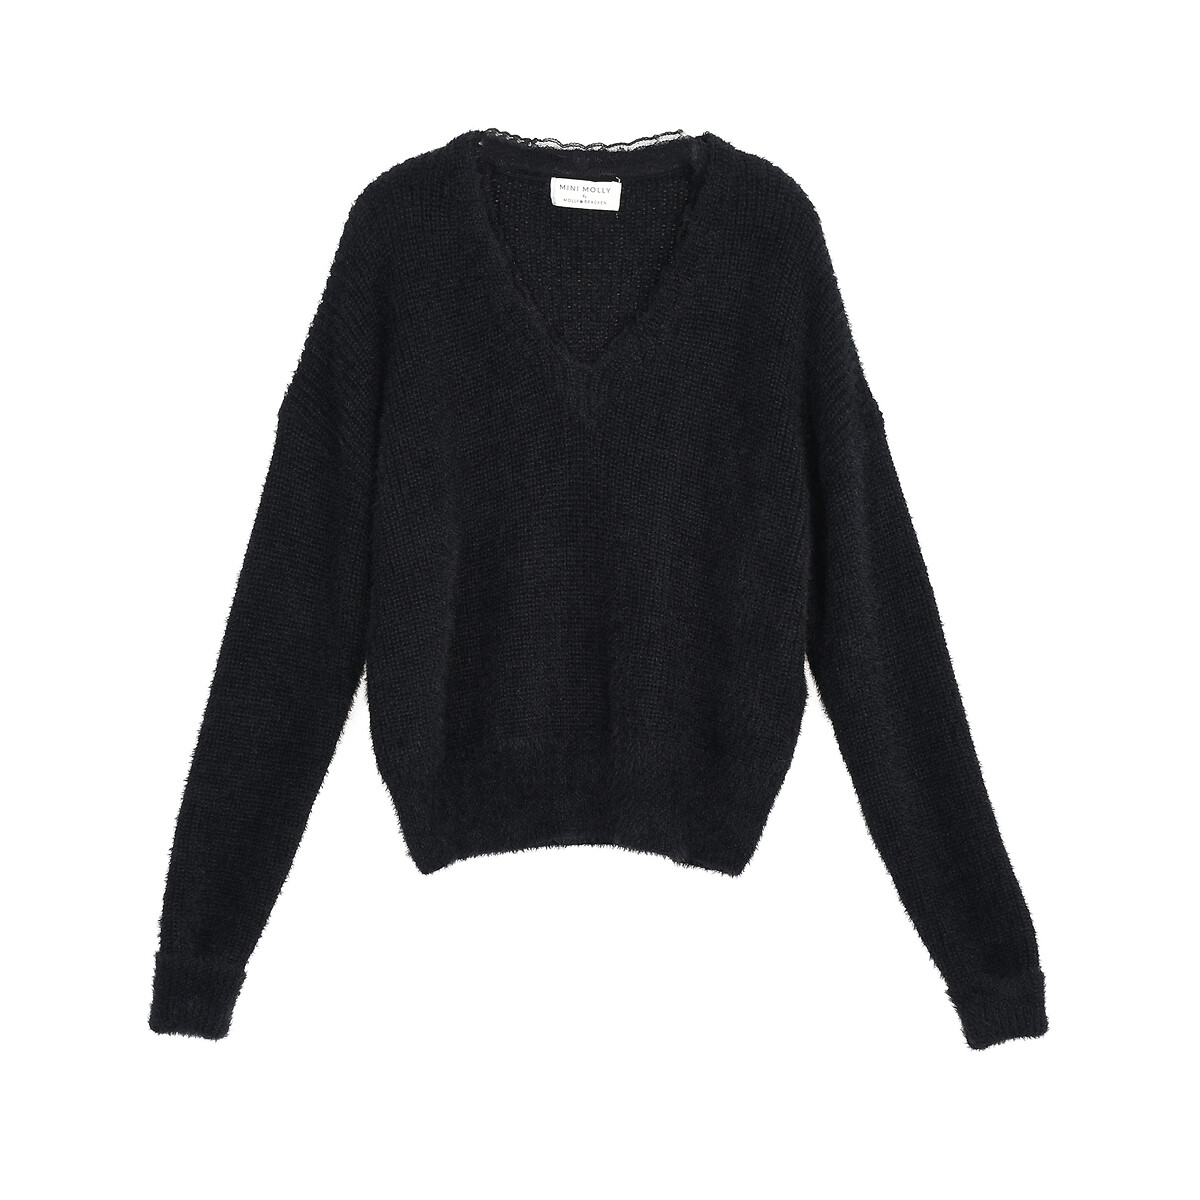 Пуловер С V-образным вырезом 14 лет - 156 см черный LaRedoute, размер 14 лет - 156 см - фото 5